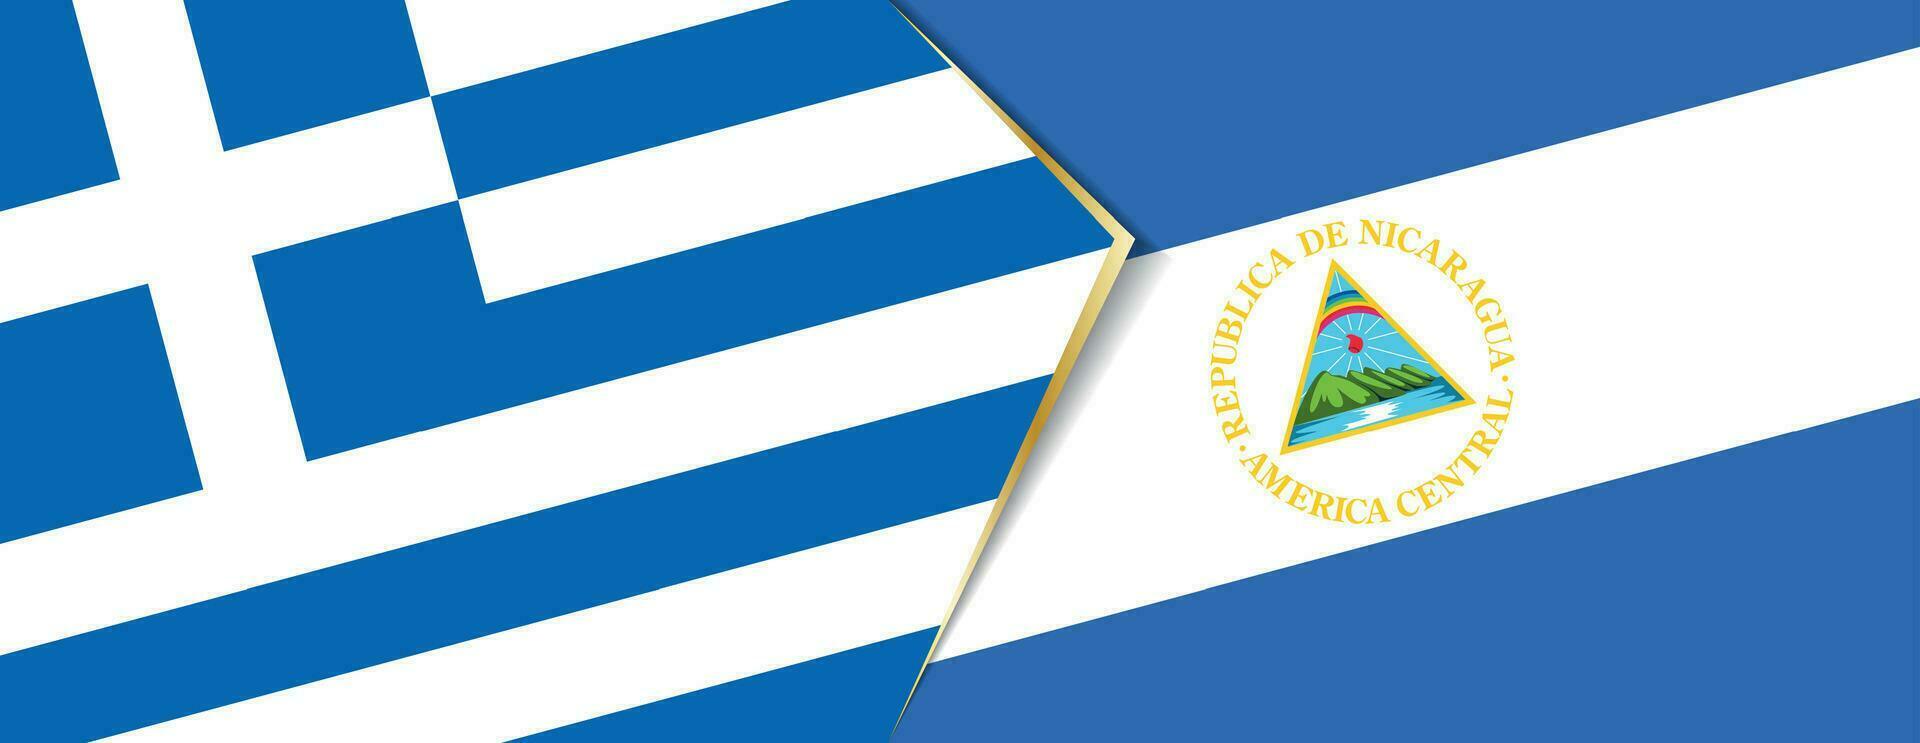 Grecia y Nicaragua banderas, dos vector banderas